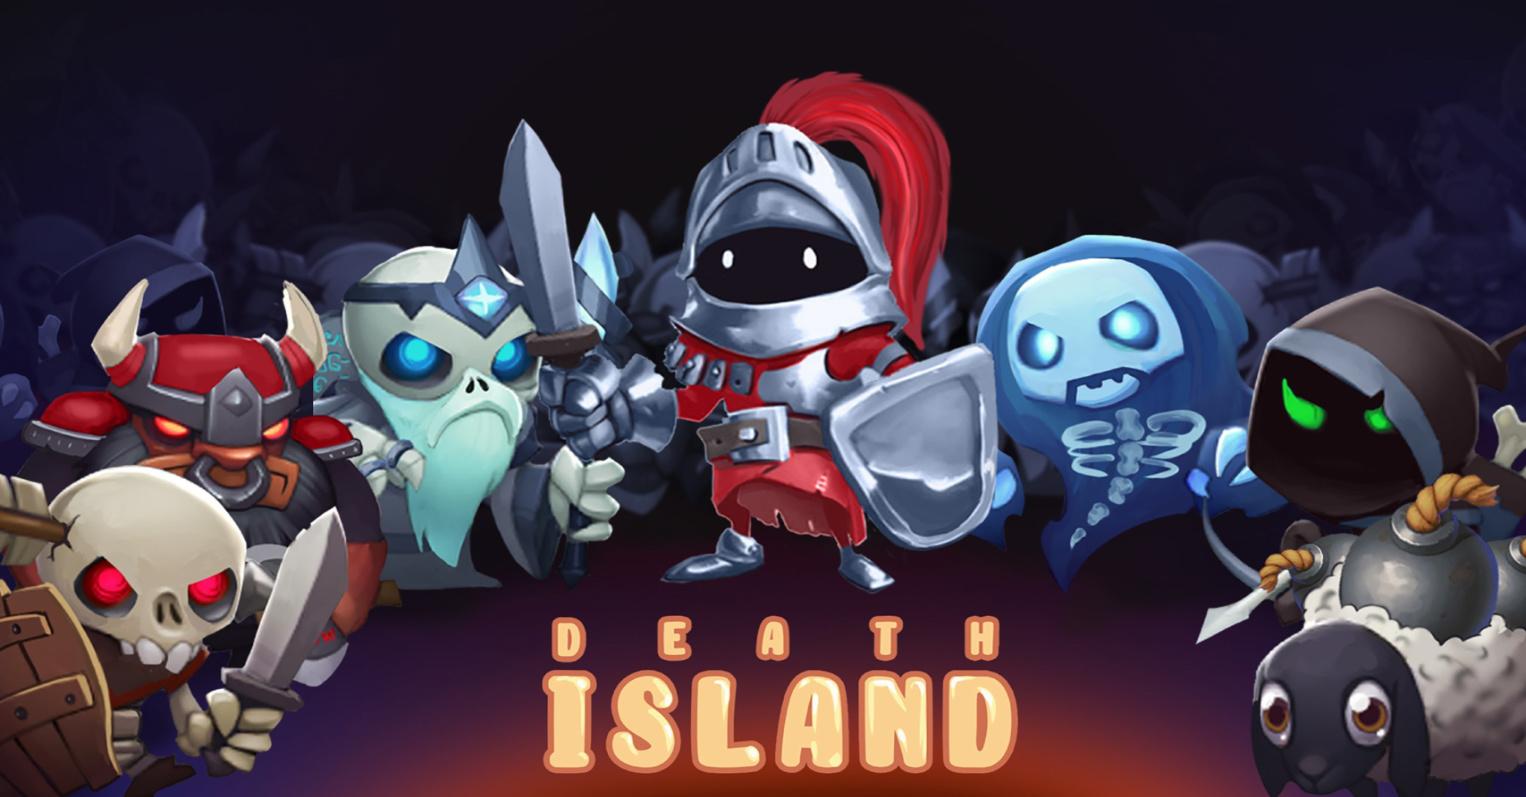 Death Island - clicker of your dreams!